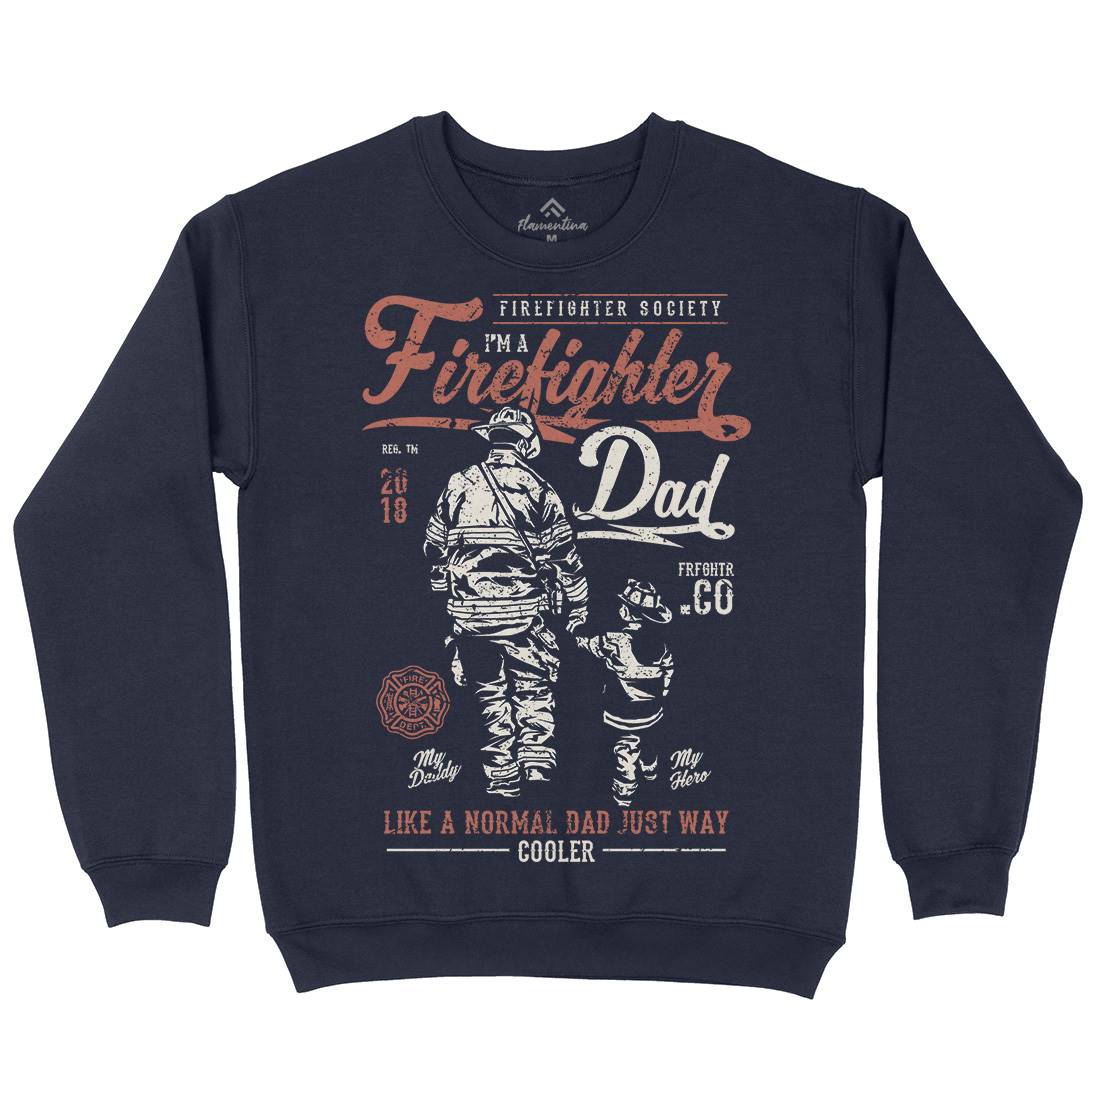 Dad Kids Crew Neck Sweatshirt Firefighters A657